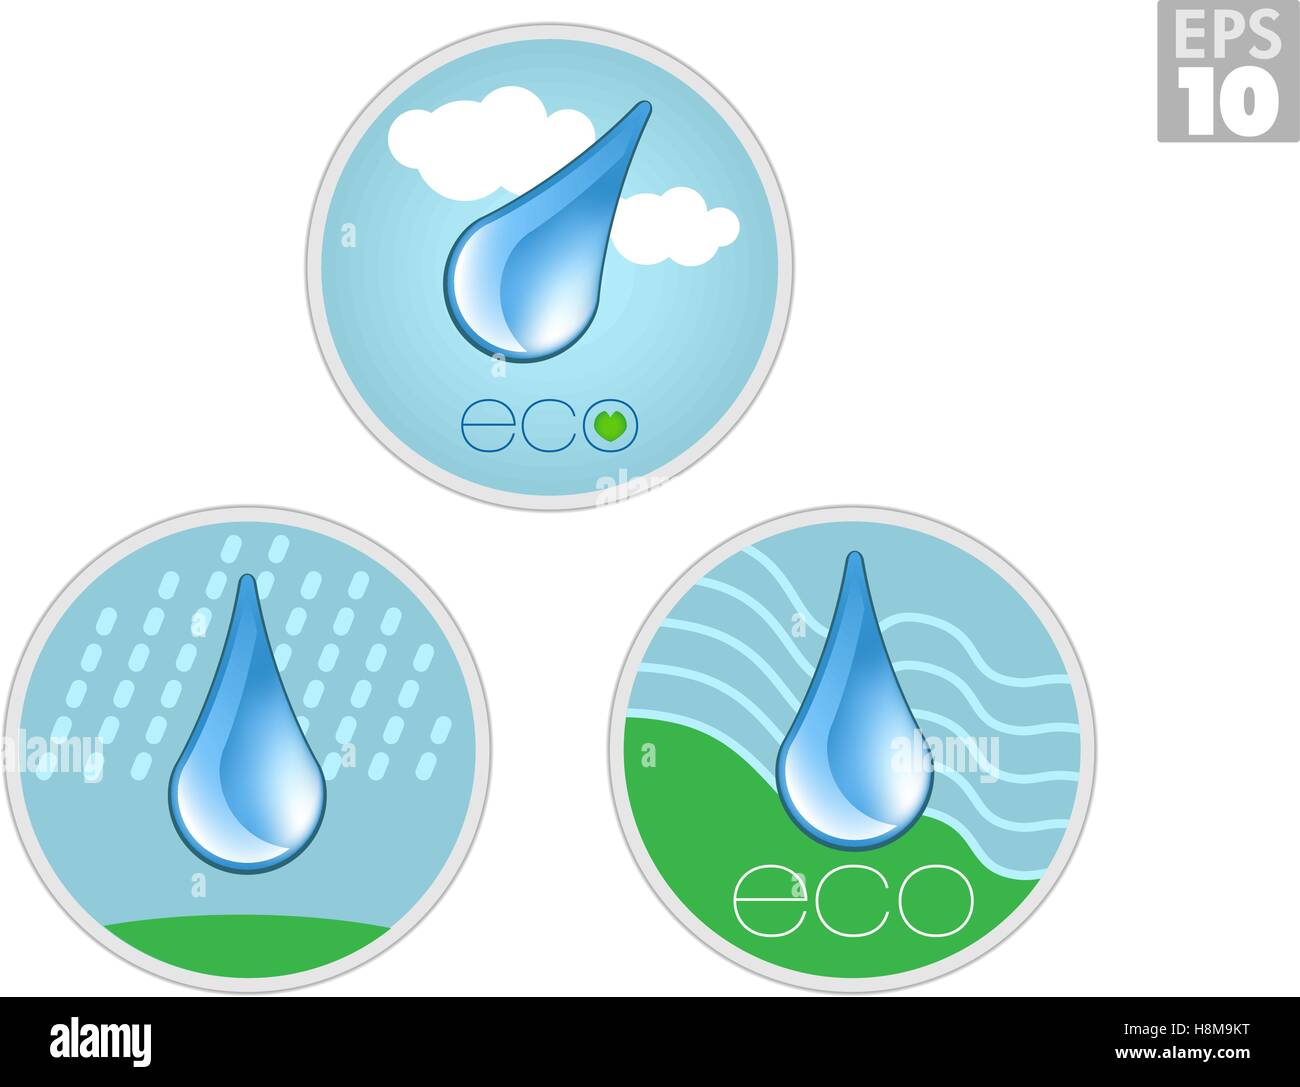 Eco-friendly icone di acqua, acqua pulita scende, ambiente verde Illustrazione Vettoriale